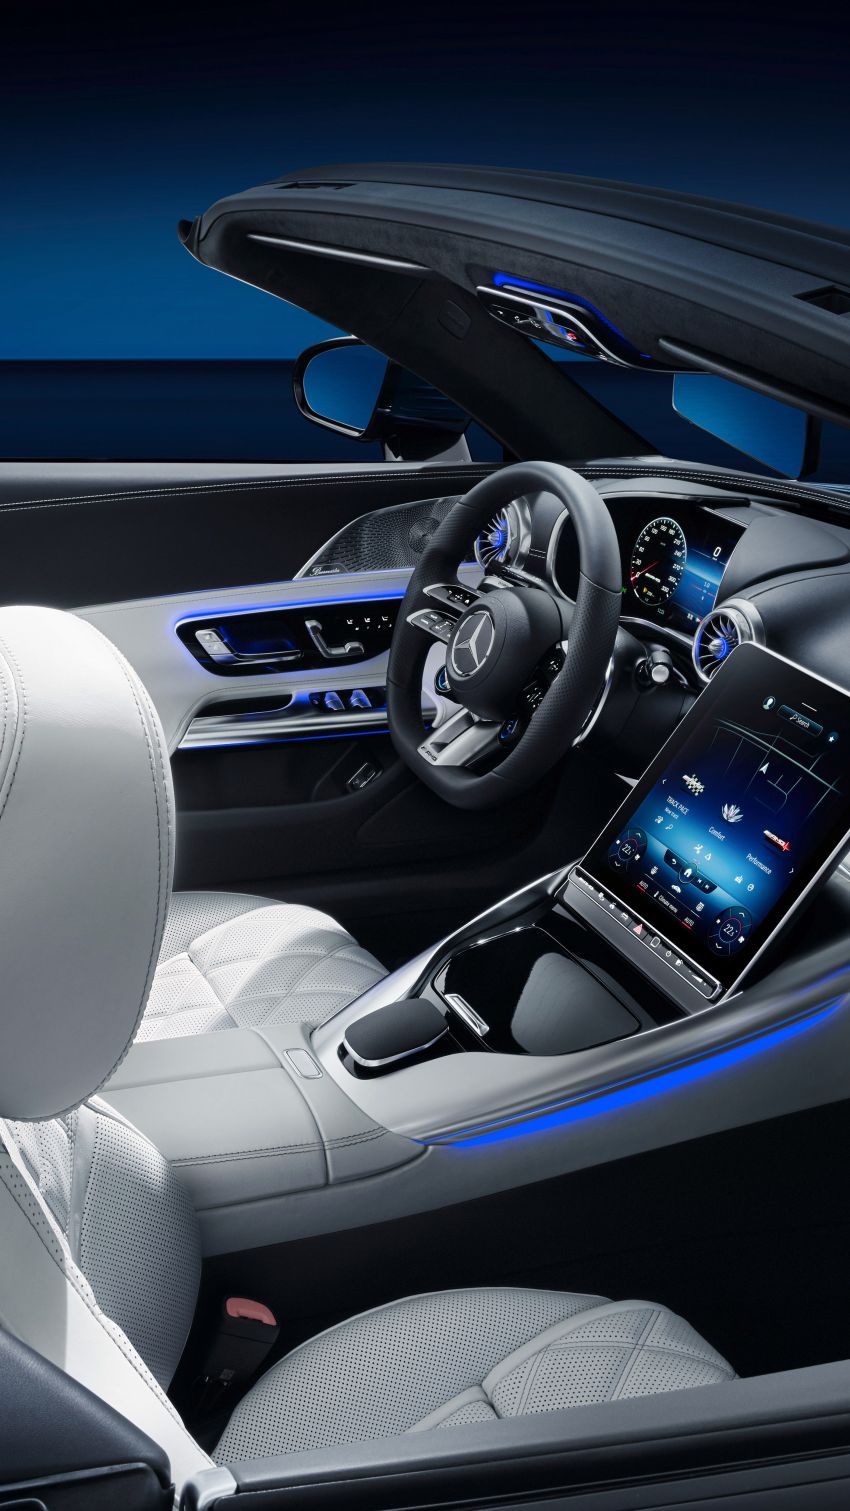 2022 R232 Mercedes-AMG SL interior gets revealed Image #1318882